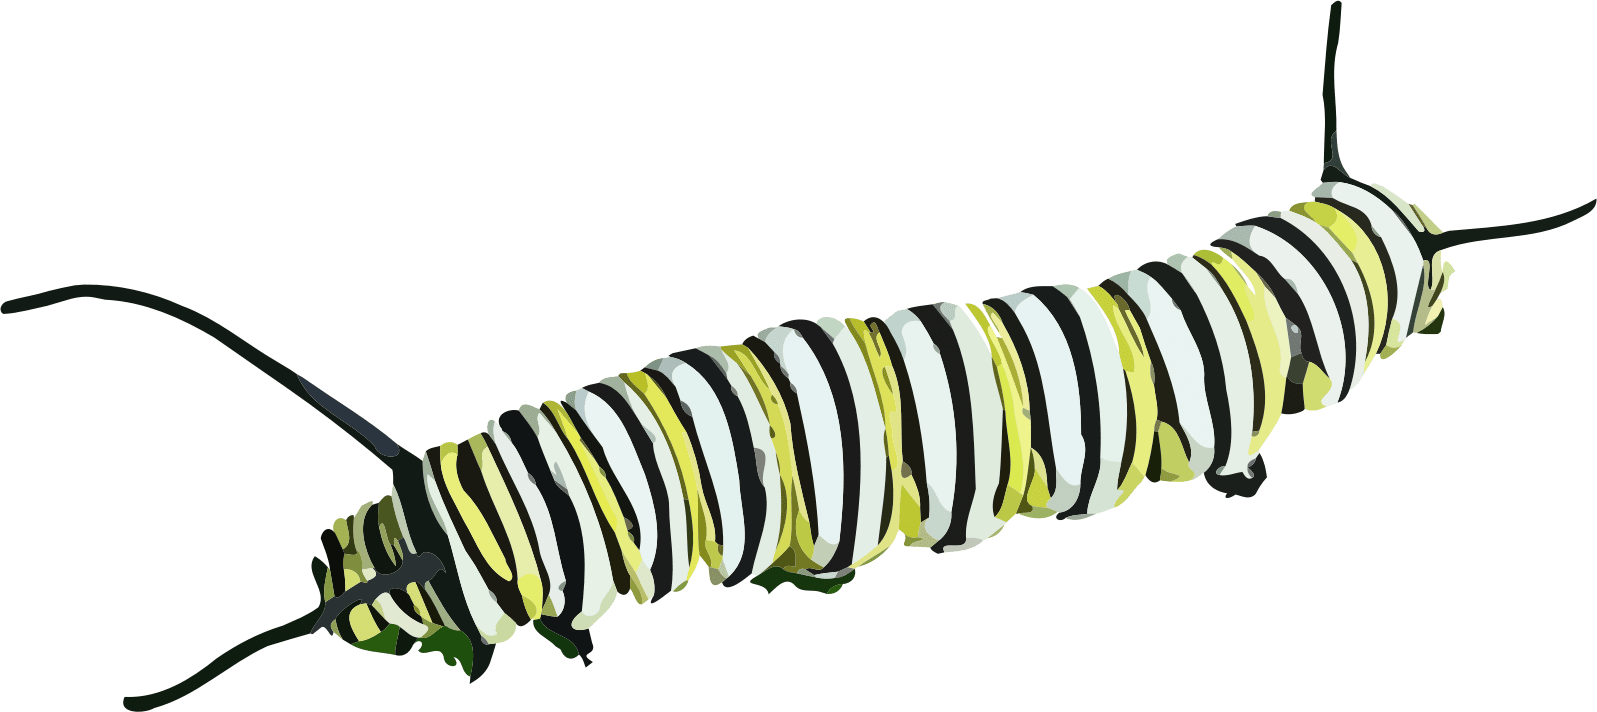 Caterpillar Clipart - Caterpillar Clipart